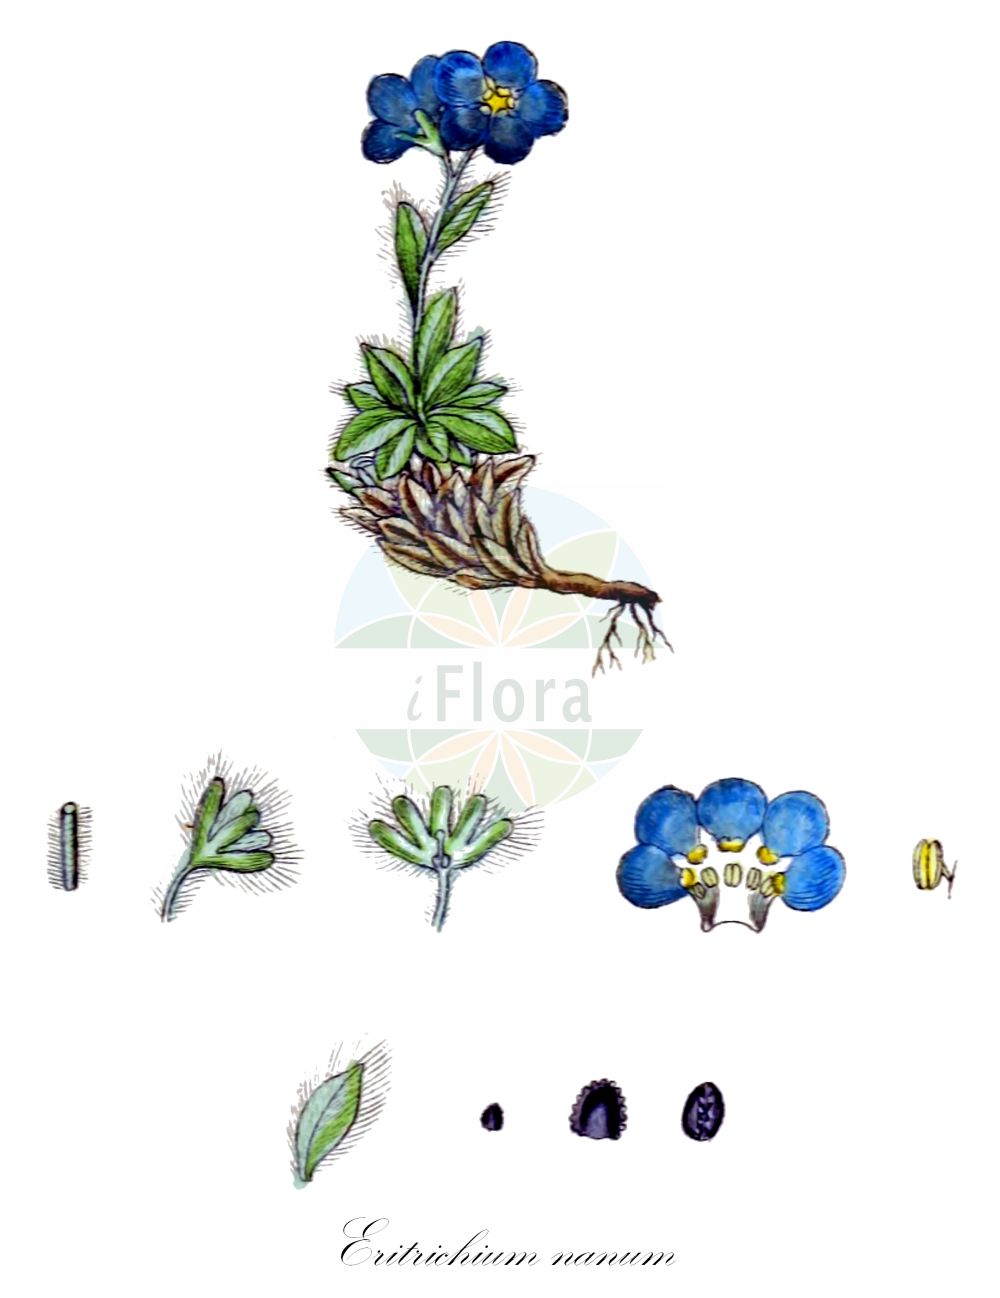 Historische Abbildung von Eritrichium nanum (Himmelsherold - King-of-The-Alps). Das Bild zeigt Blatt, Bluete, Frucht und Same. ---- Historical Drawing of Eritrichium nanum (Himmelsherold - King-of-The-Alps). The image is showing leaf, flower, fruit and seed.(Eritrichium nanum,Himmelsherold,King-of-The-Alps,Eritrichium nanum,Eritrichium tergloviense,Myosotis nana,Himmelsherold,King-of-The-Alps,Alpine Forget-me-Not,Arctic Alpine Forget-me-Not,Dwarf Forget-me-Not,Eritrichium,Schopfvergissmeinnicht,Alpine Forget-me-Not,Boraginaceae,Raublattgewächse,Forget-me-Not family,Blatt,Bluete,Frucht,Same,leaf,flower,fruit,seed,Sturm (1796f))